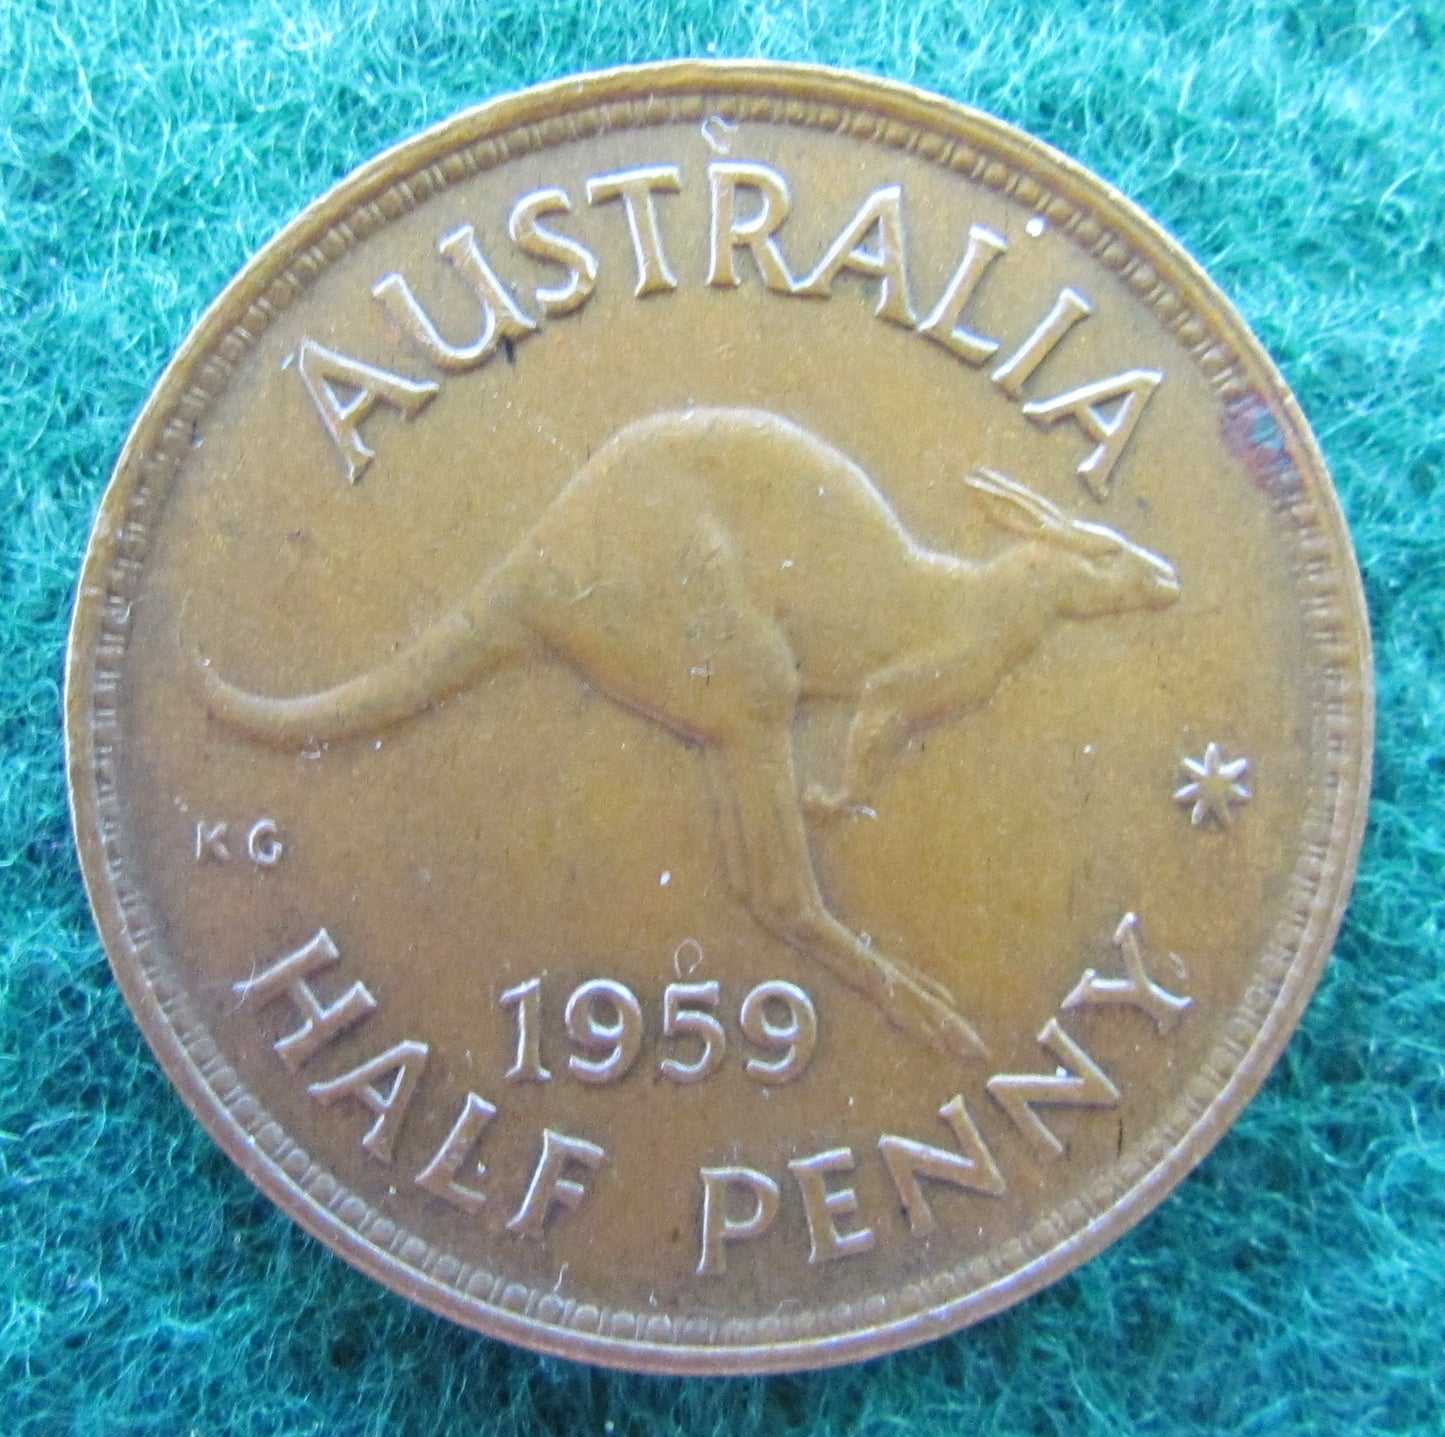 Australian 1959 1/2d Half Penny Queen Elizabeth II Coin